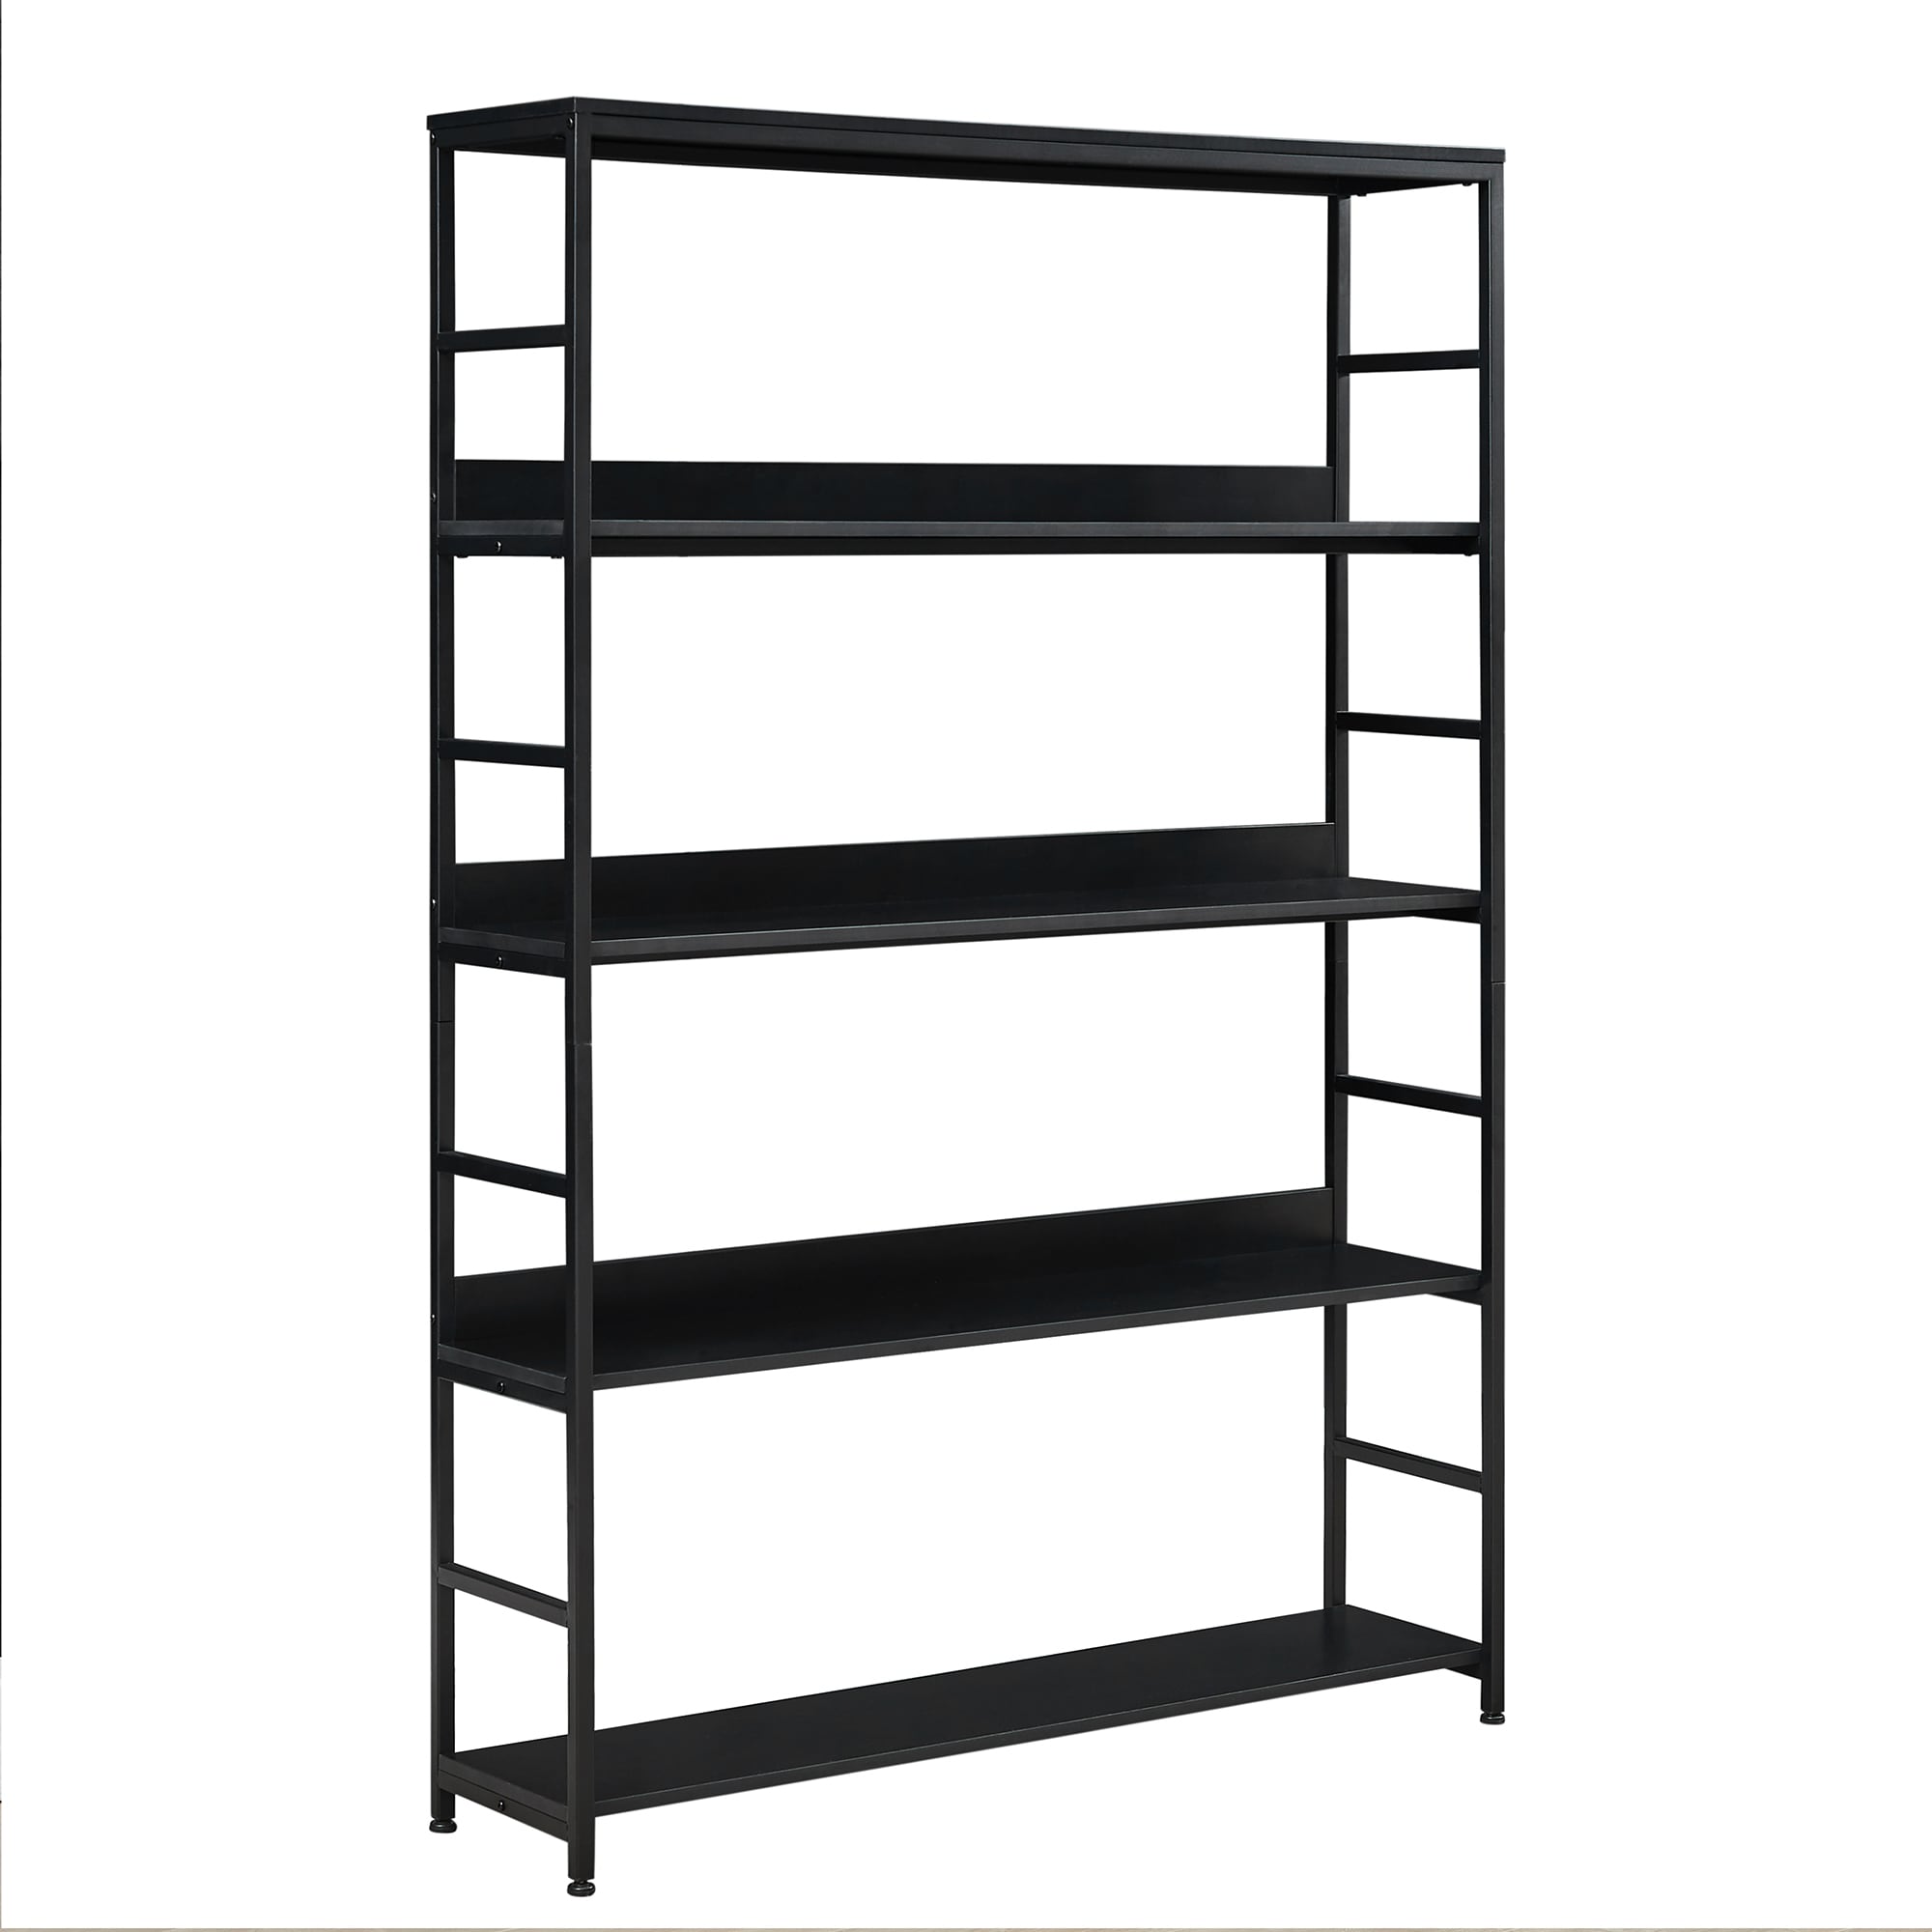 CASAINC Bookcase Black Metal 5-Shelf Ladder Bookcase (47.24-in W x 68.9 ...